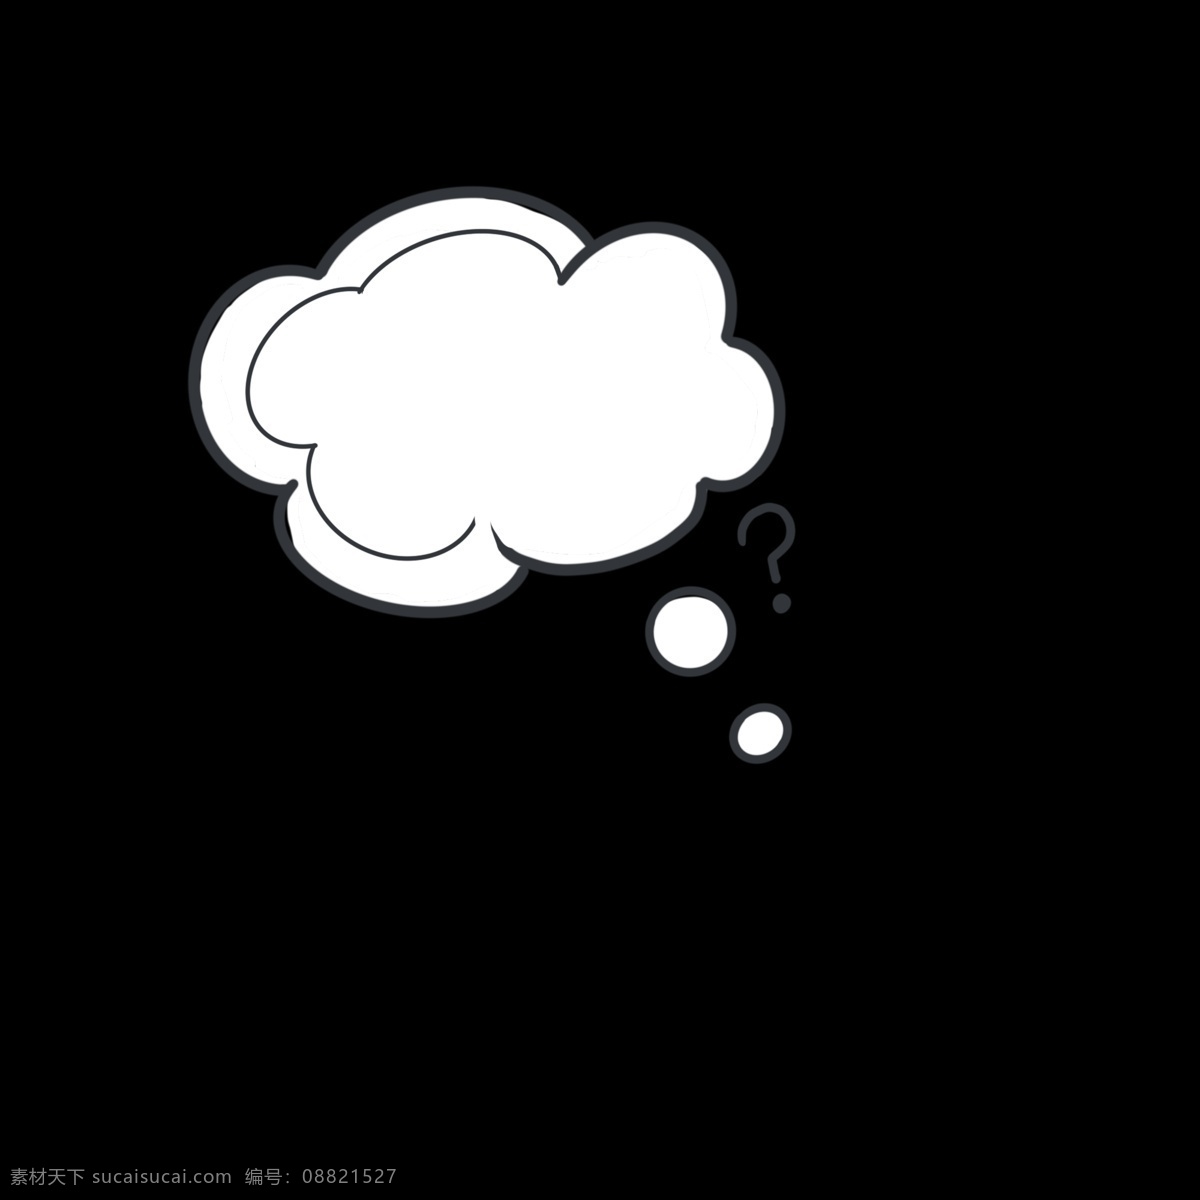 黑白 云朵 形状 思考 气泡 装饰 浅色系 云朵形状 思考气泡 疑问 想法 灵感 简约 简洁 扁平风格 海报